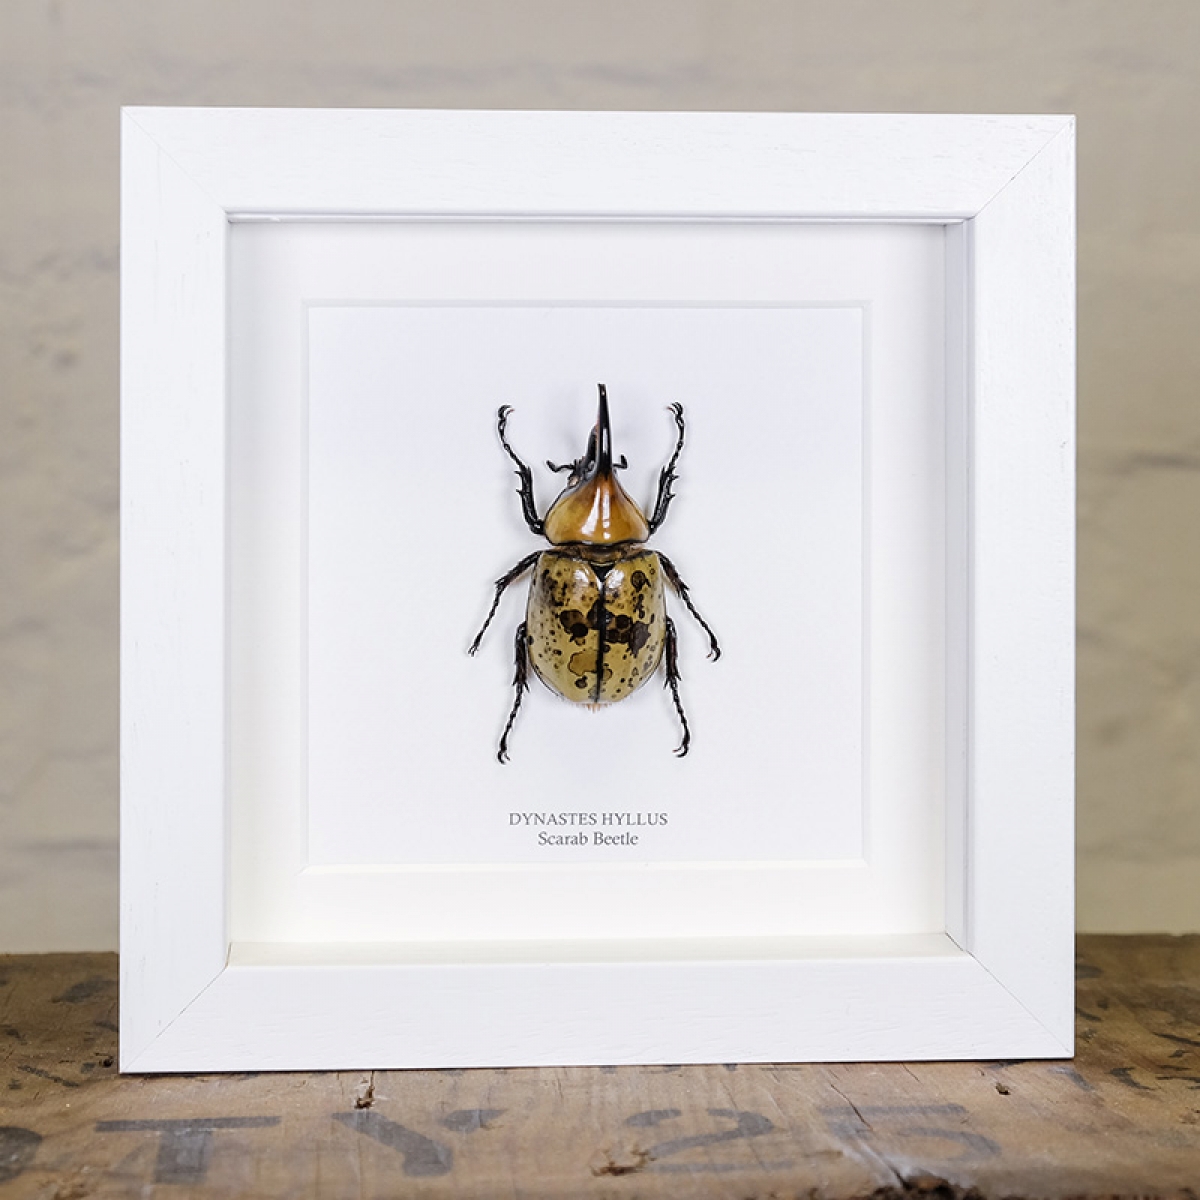 Dynastes hyllus Beetle in Box Frame (Dynastes hyllus)